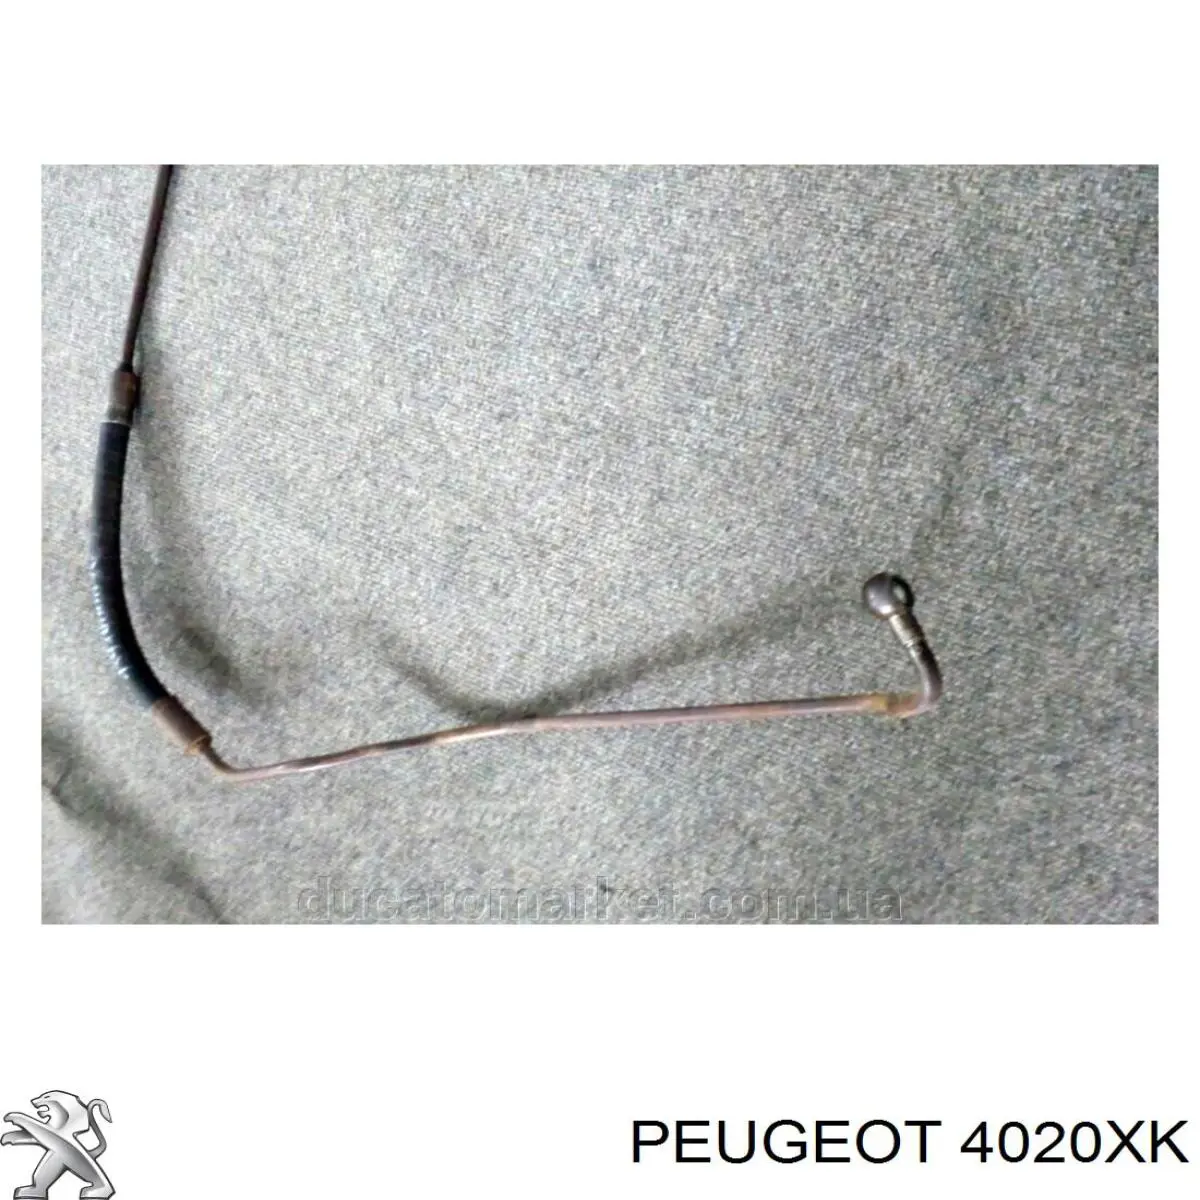 Mangueira da Direção hidrâulica assistida de pressão alta desde a bomba até a régua (do mecanismo) para Peugeot Boxer (244)